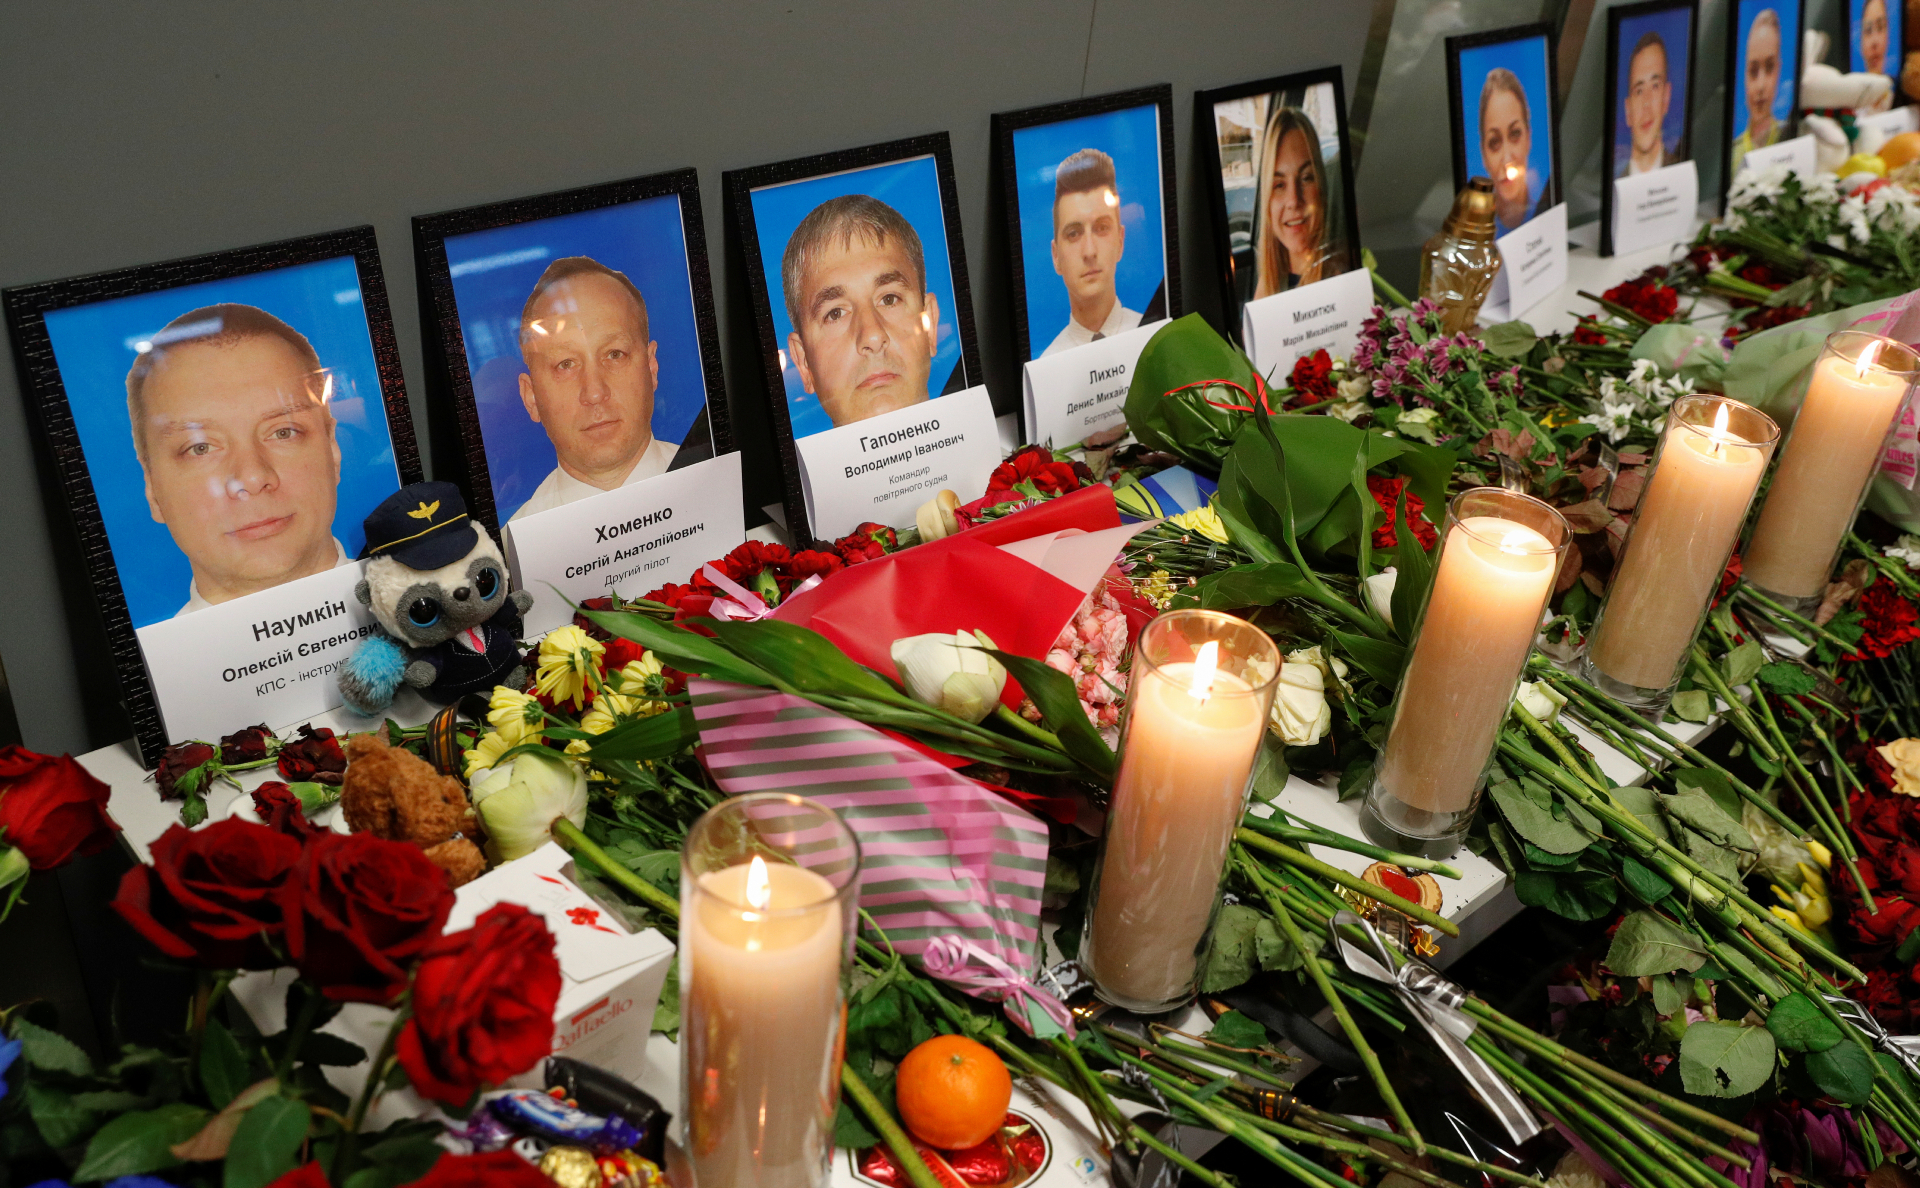 похороны погибших в авиакатастрофе над синаем фото